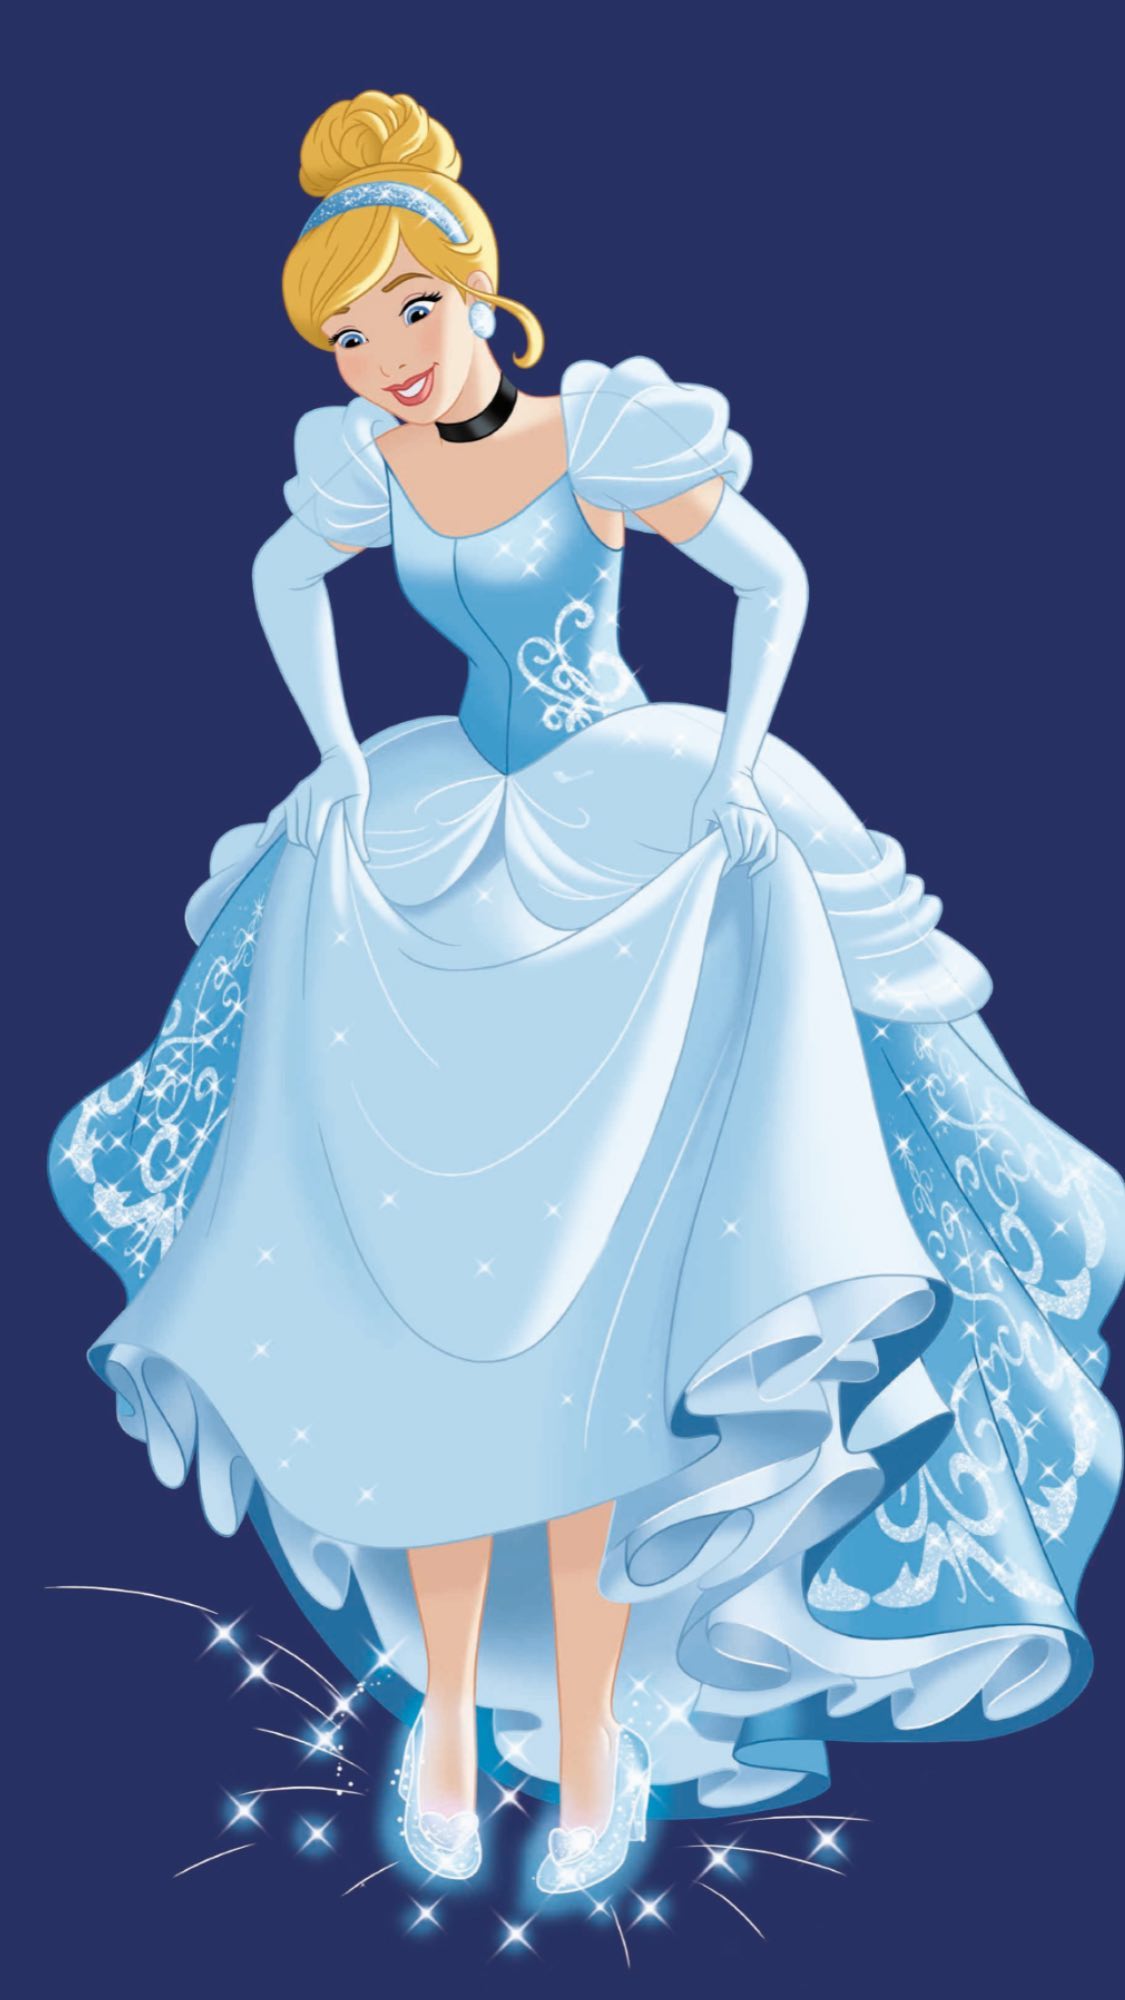 Disney Princess Phone Wallpaper